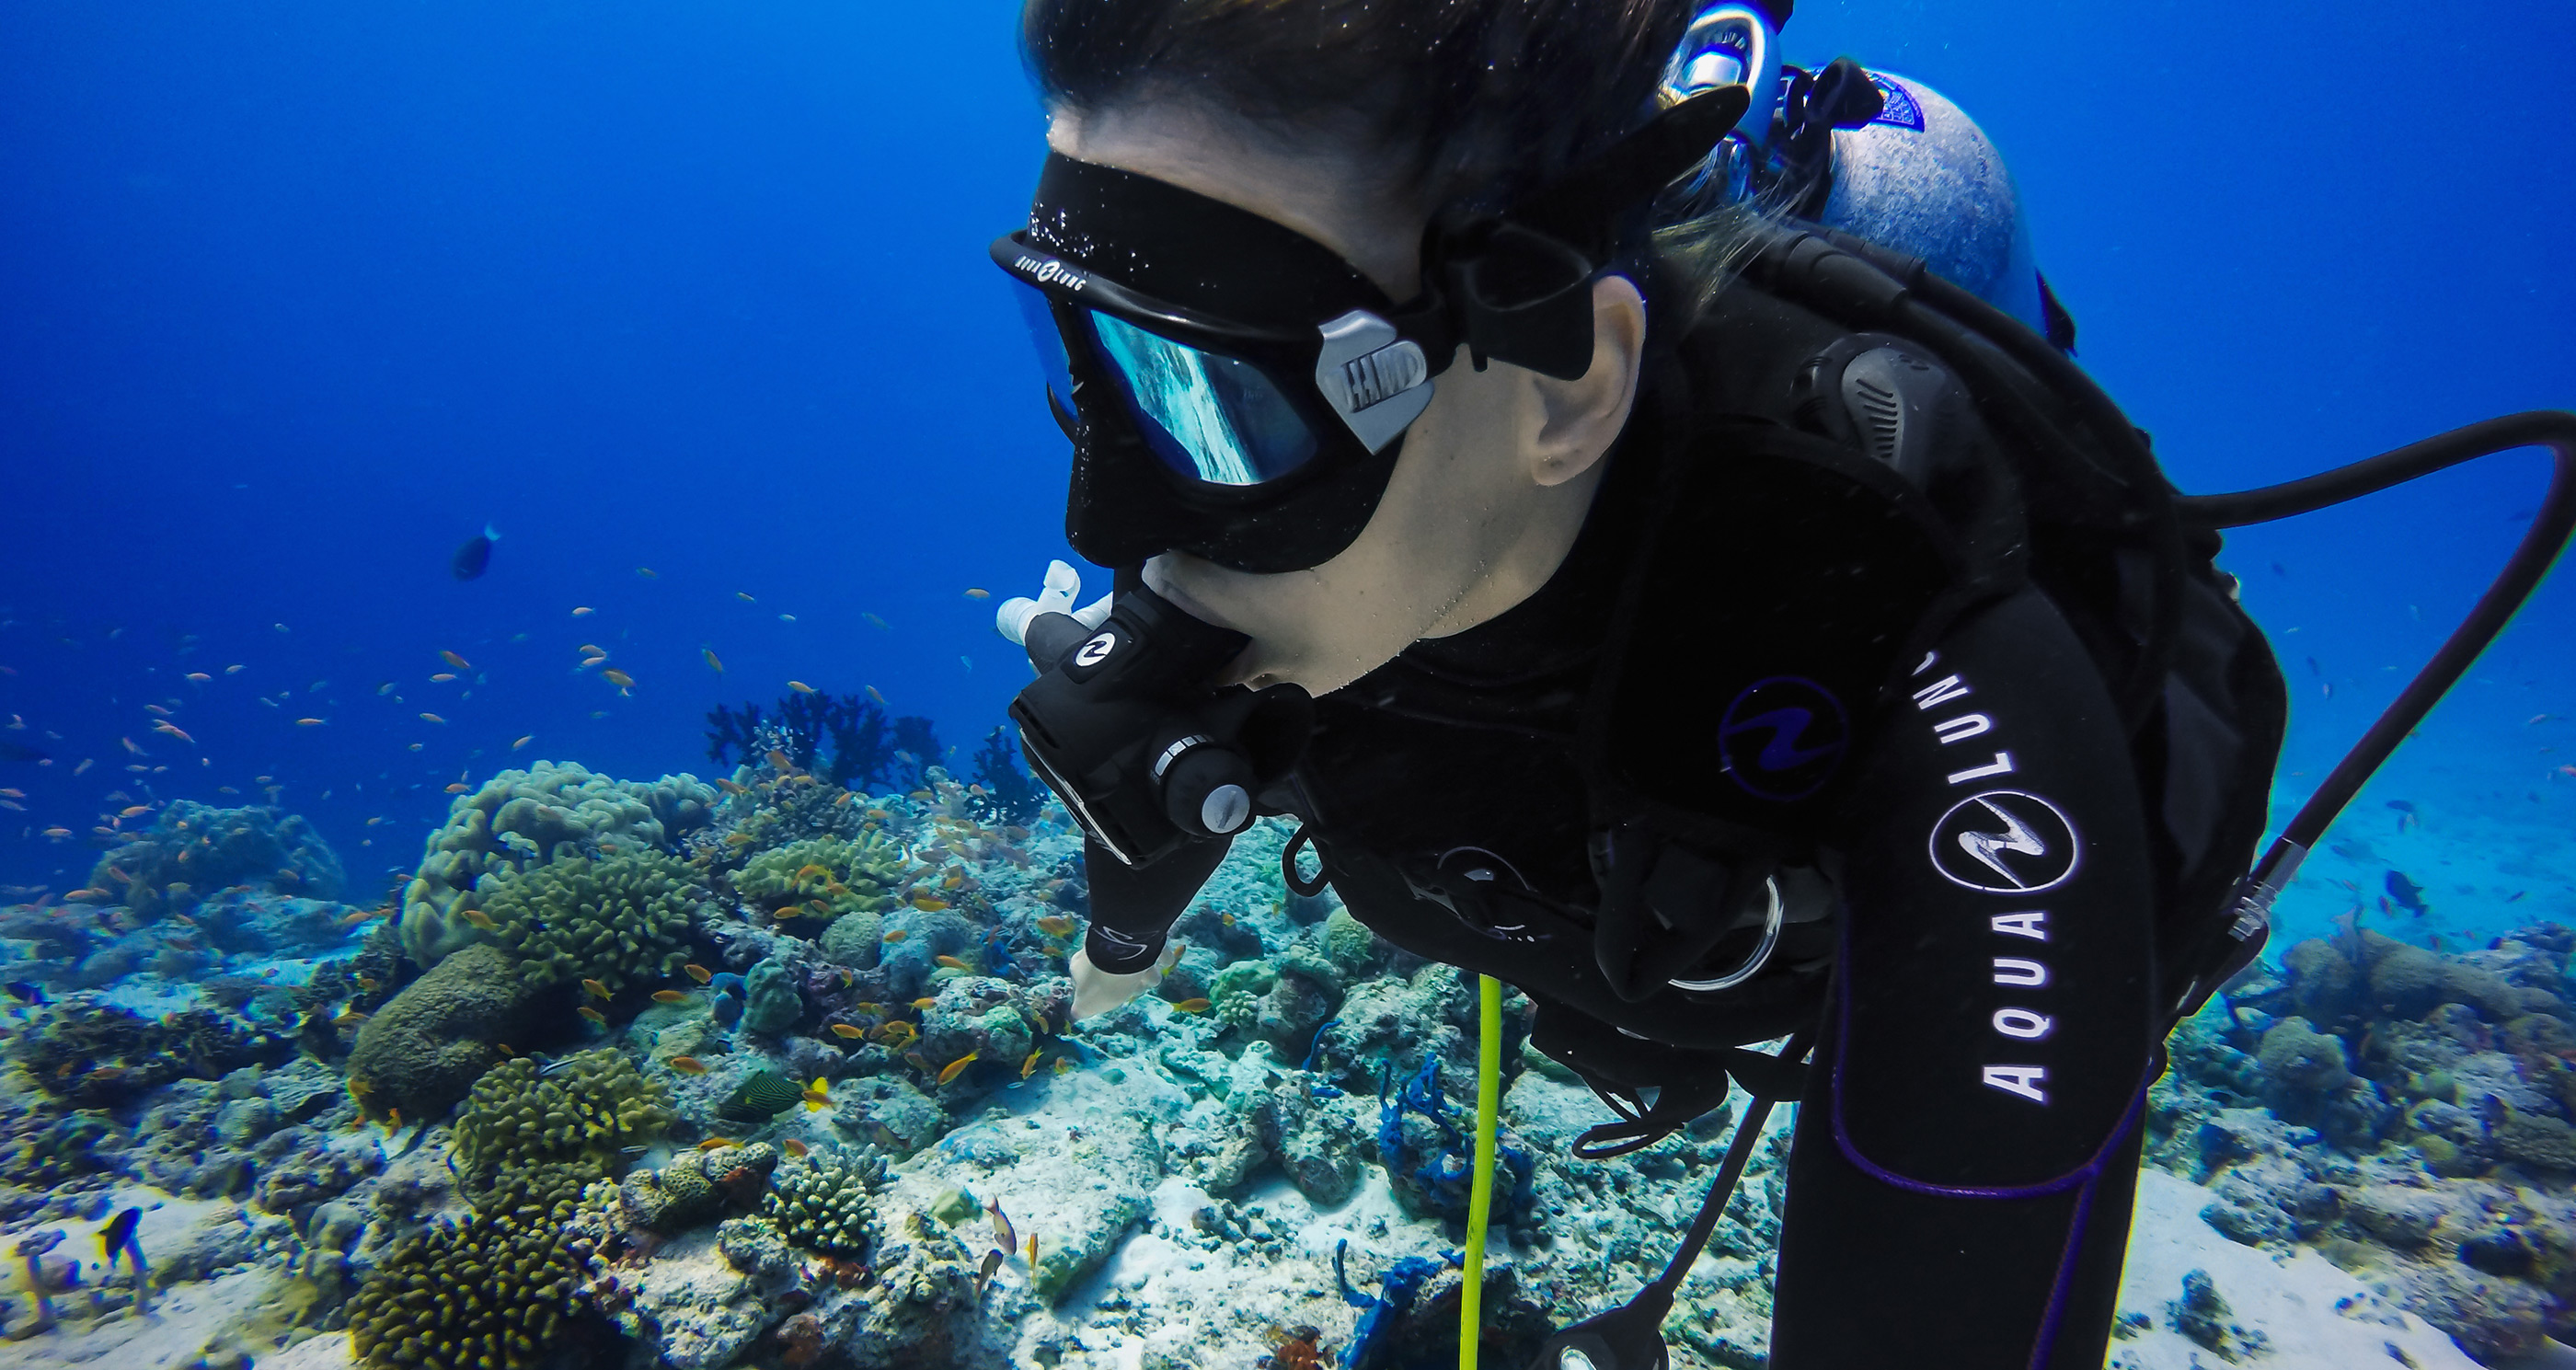 GoPro - Green Water Dive Filter for Super Suit diving case - TEK-Shanghai